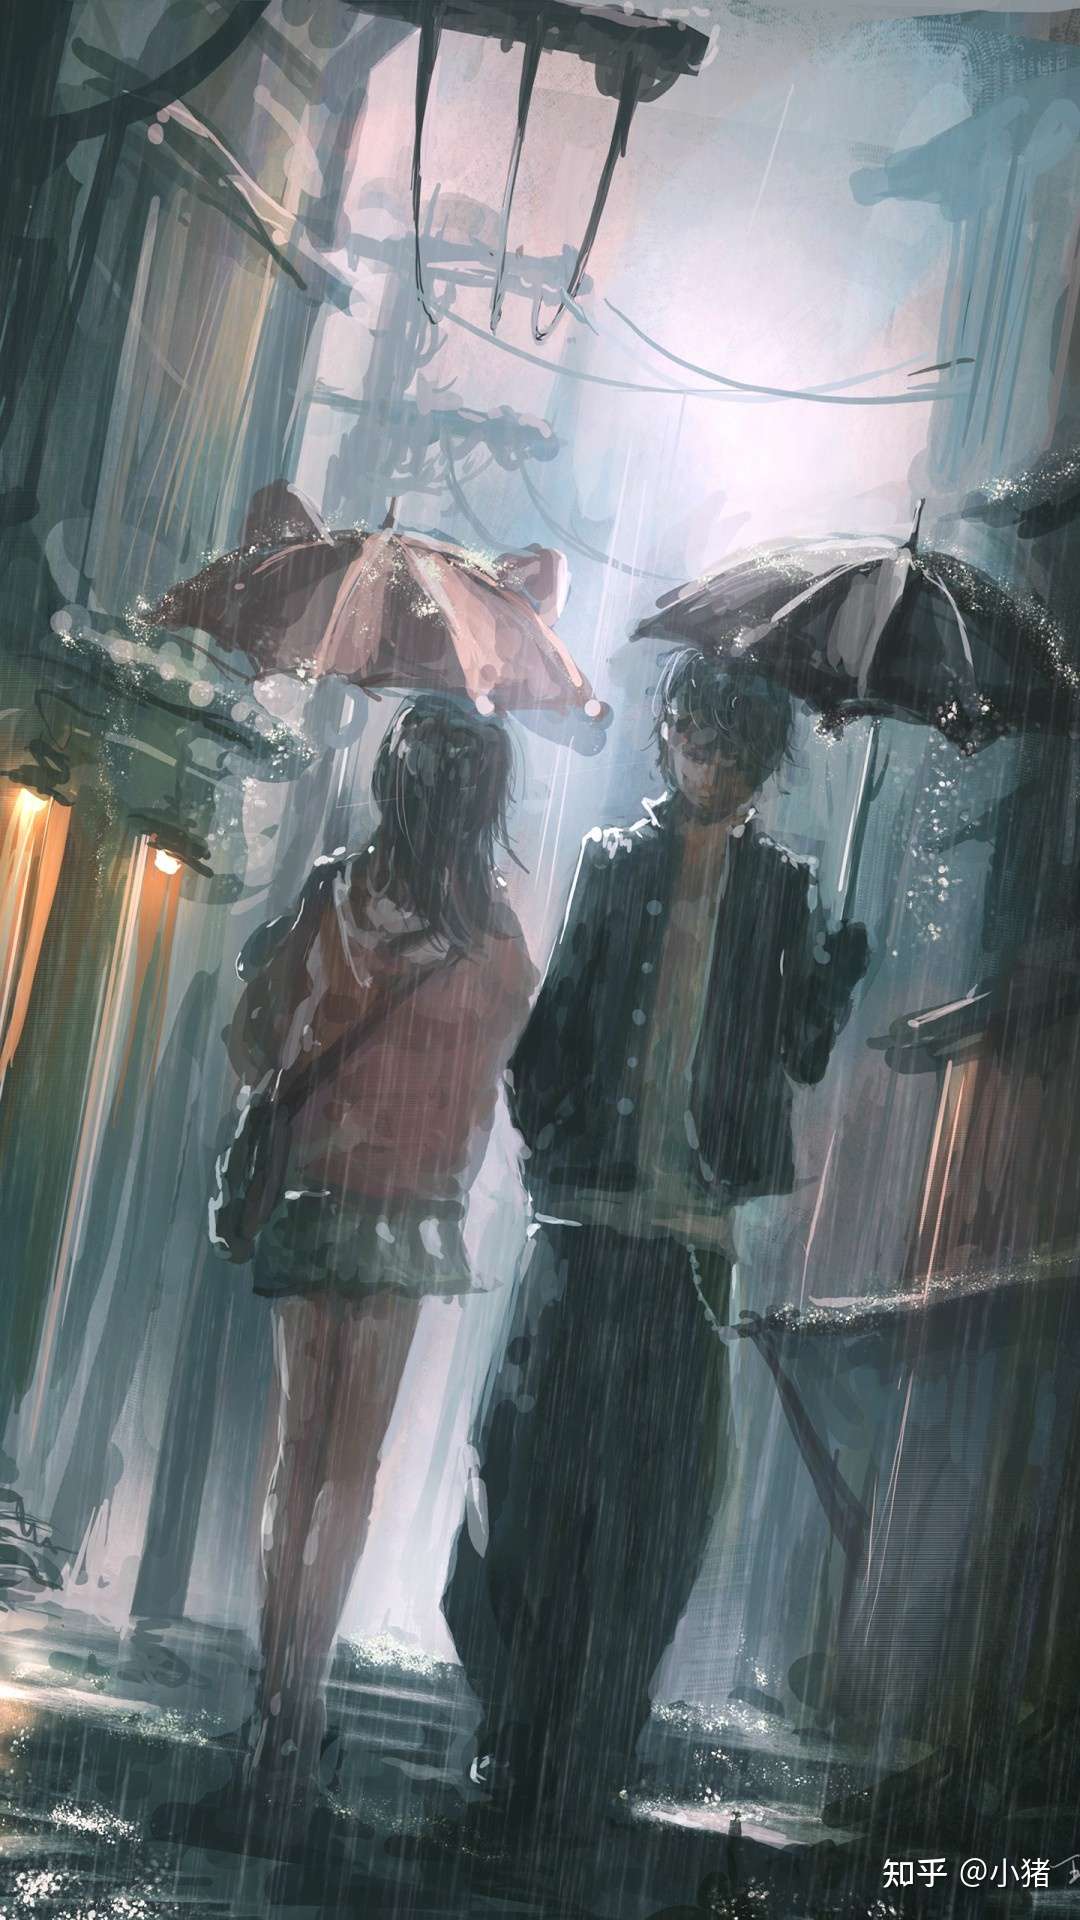 动漫风格的雨景壁纸 繁华城市的手机壁纸 雨天壁纸伤感图片动漫 知乎